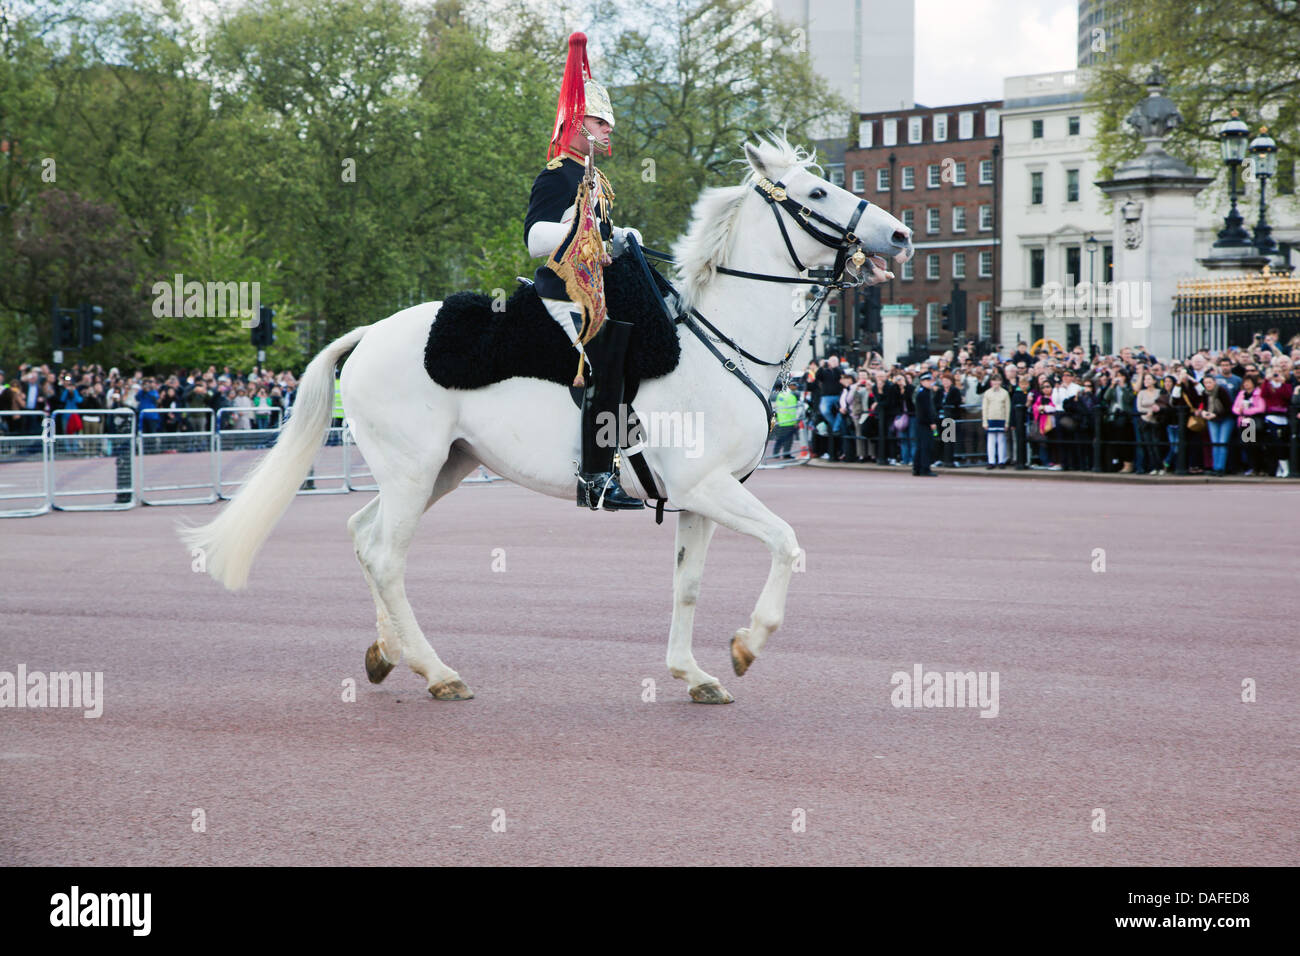 LONDON - 17 Mai: Britische Royal Guards marschieren und führen die Wachablösung im Buckingham Palace am 17. Mai 2013 in London Stockfoto